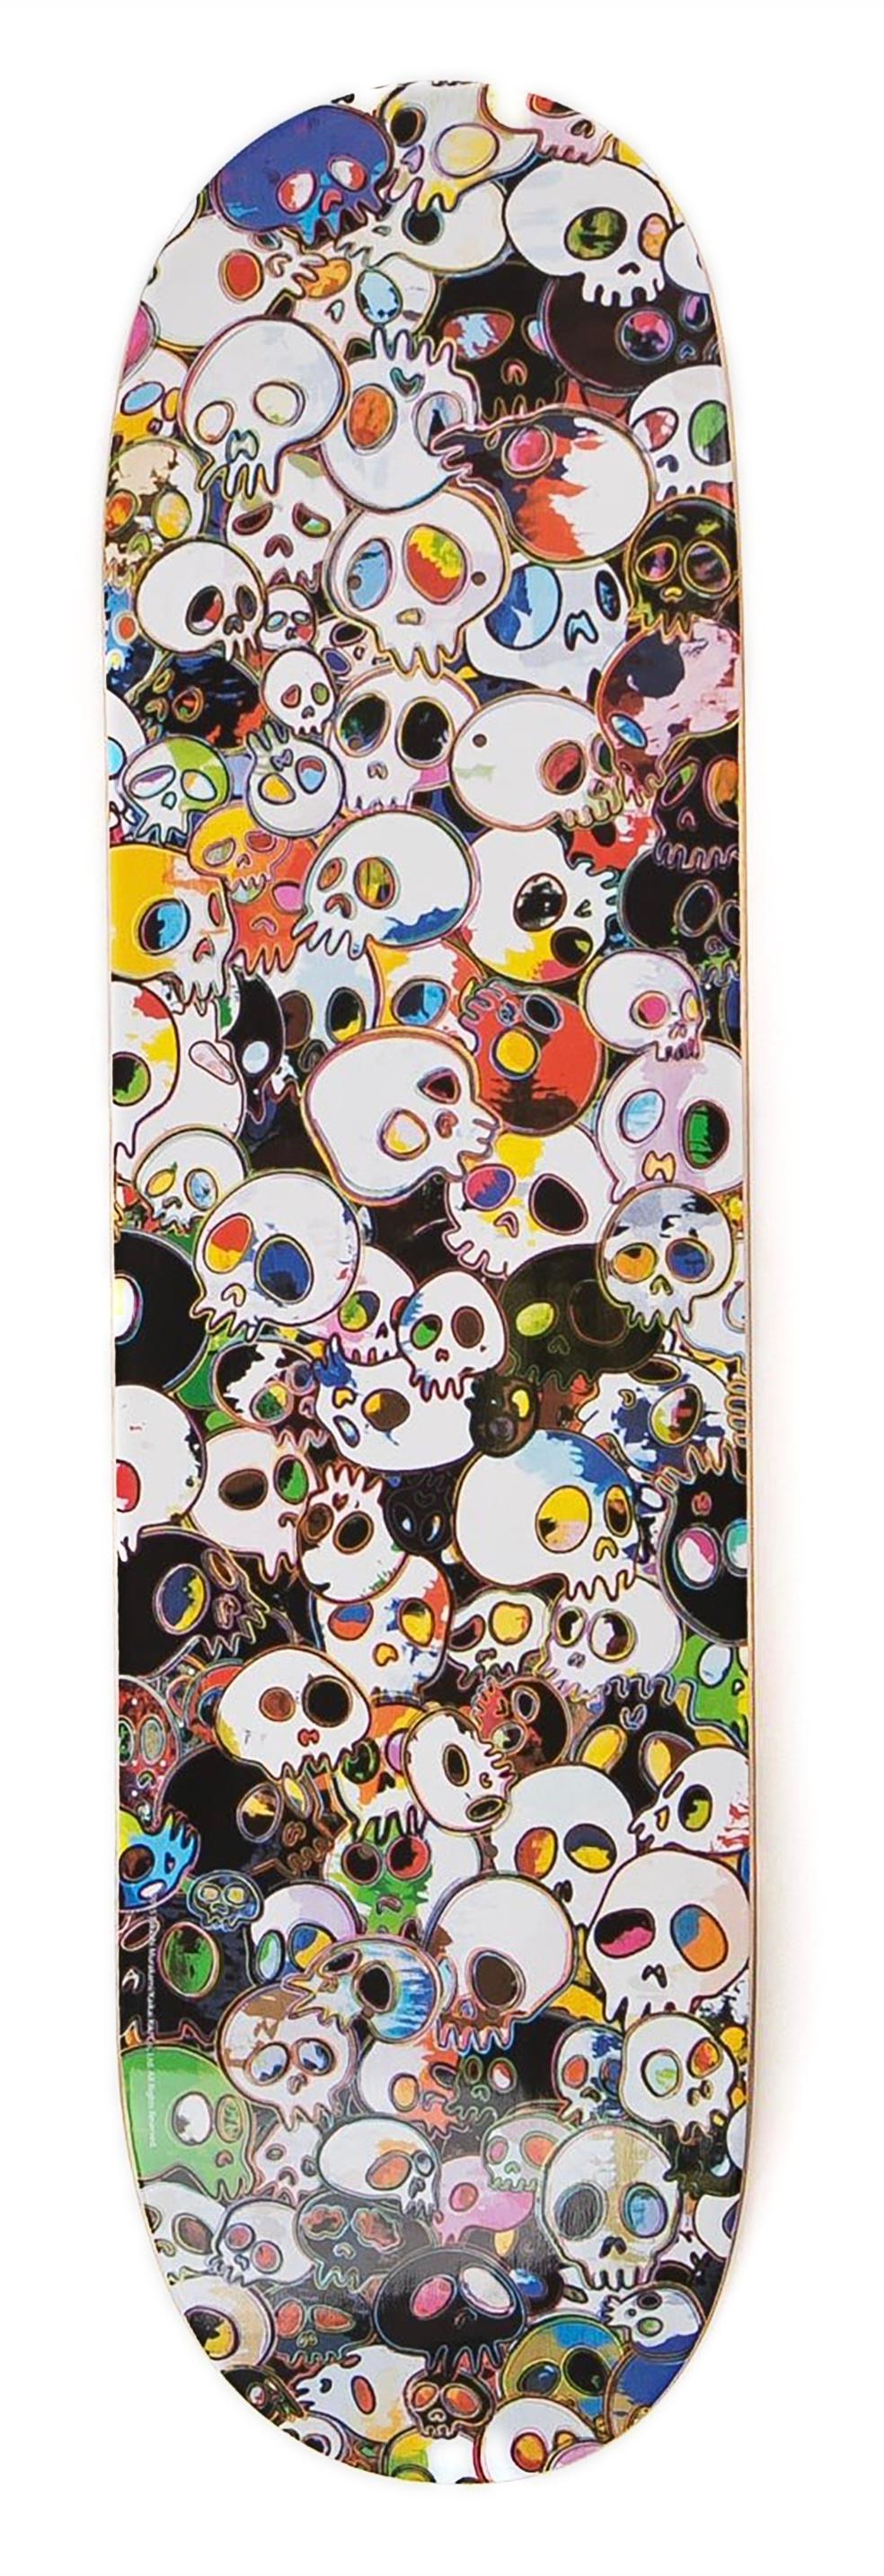 Takashi Murakami Totenköpfe Skateboard Deck  2015:
Ein lebendiges, einzigartiges Werk von Takashi Murakami  skulls wall-art - dieses limitierte Murakami-Skateboard mit hohem Sammlerwert wurde 2015 im Rahmen einer Collaboration zwischen Takashi